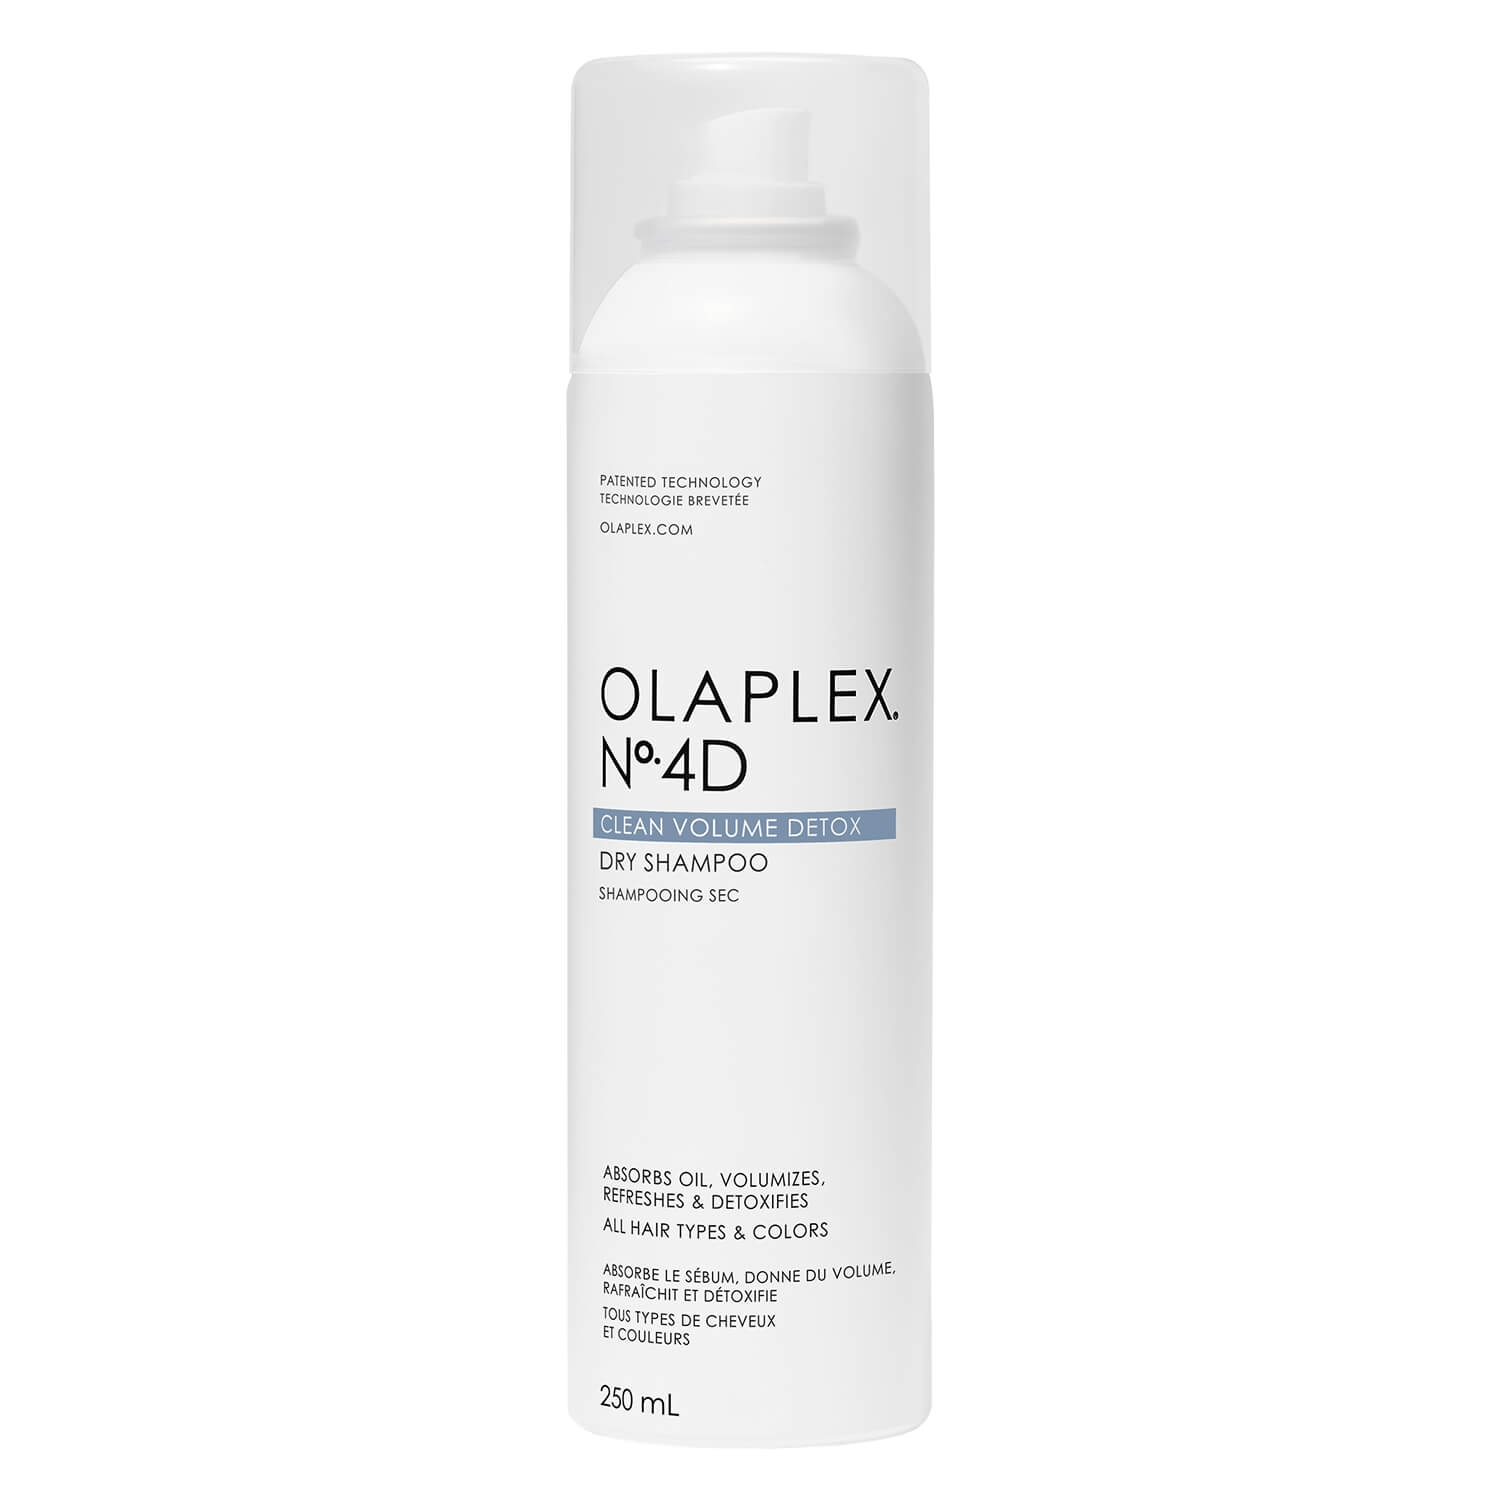 Produktbild von Olaplex - Clean Volume Detox Dry Shampoo No. 4D